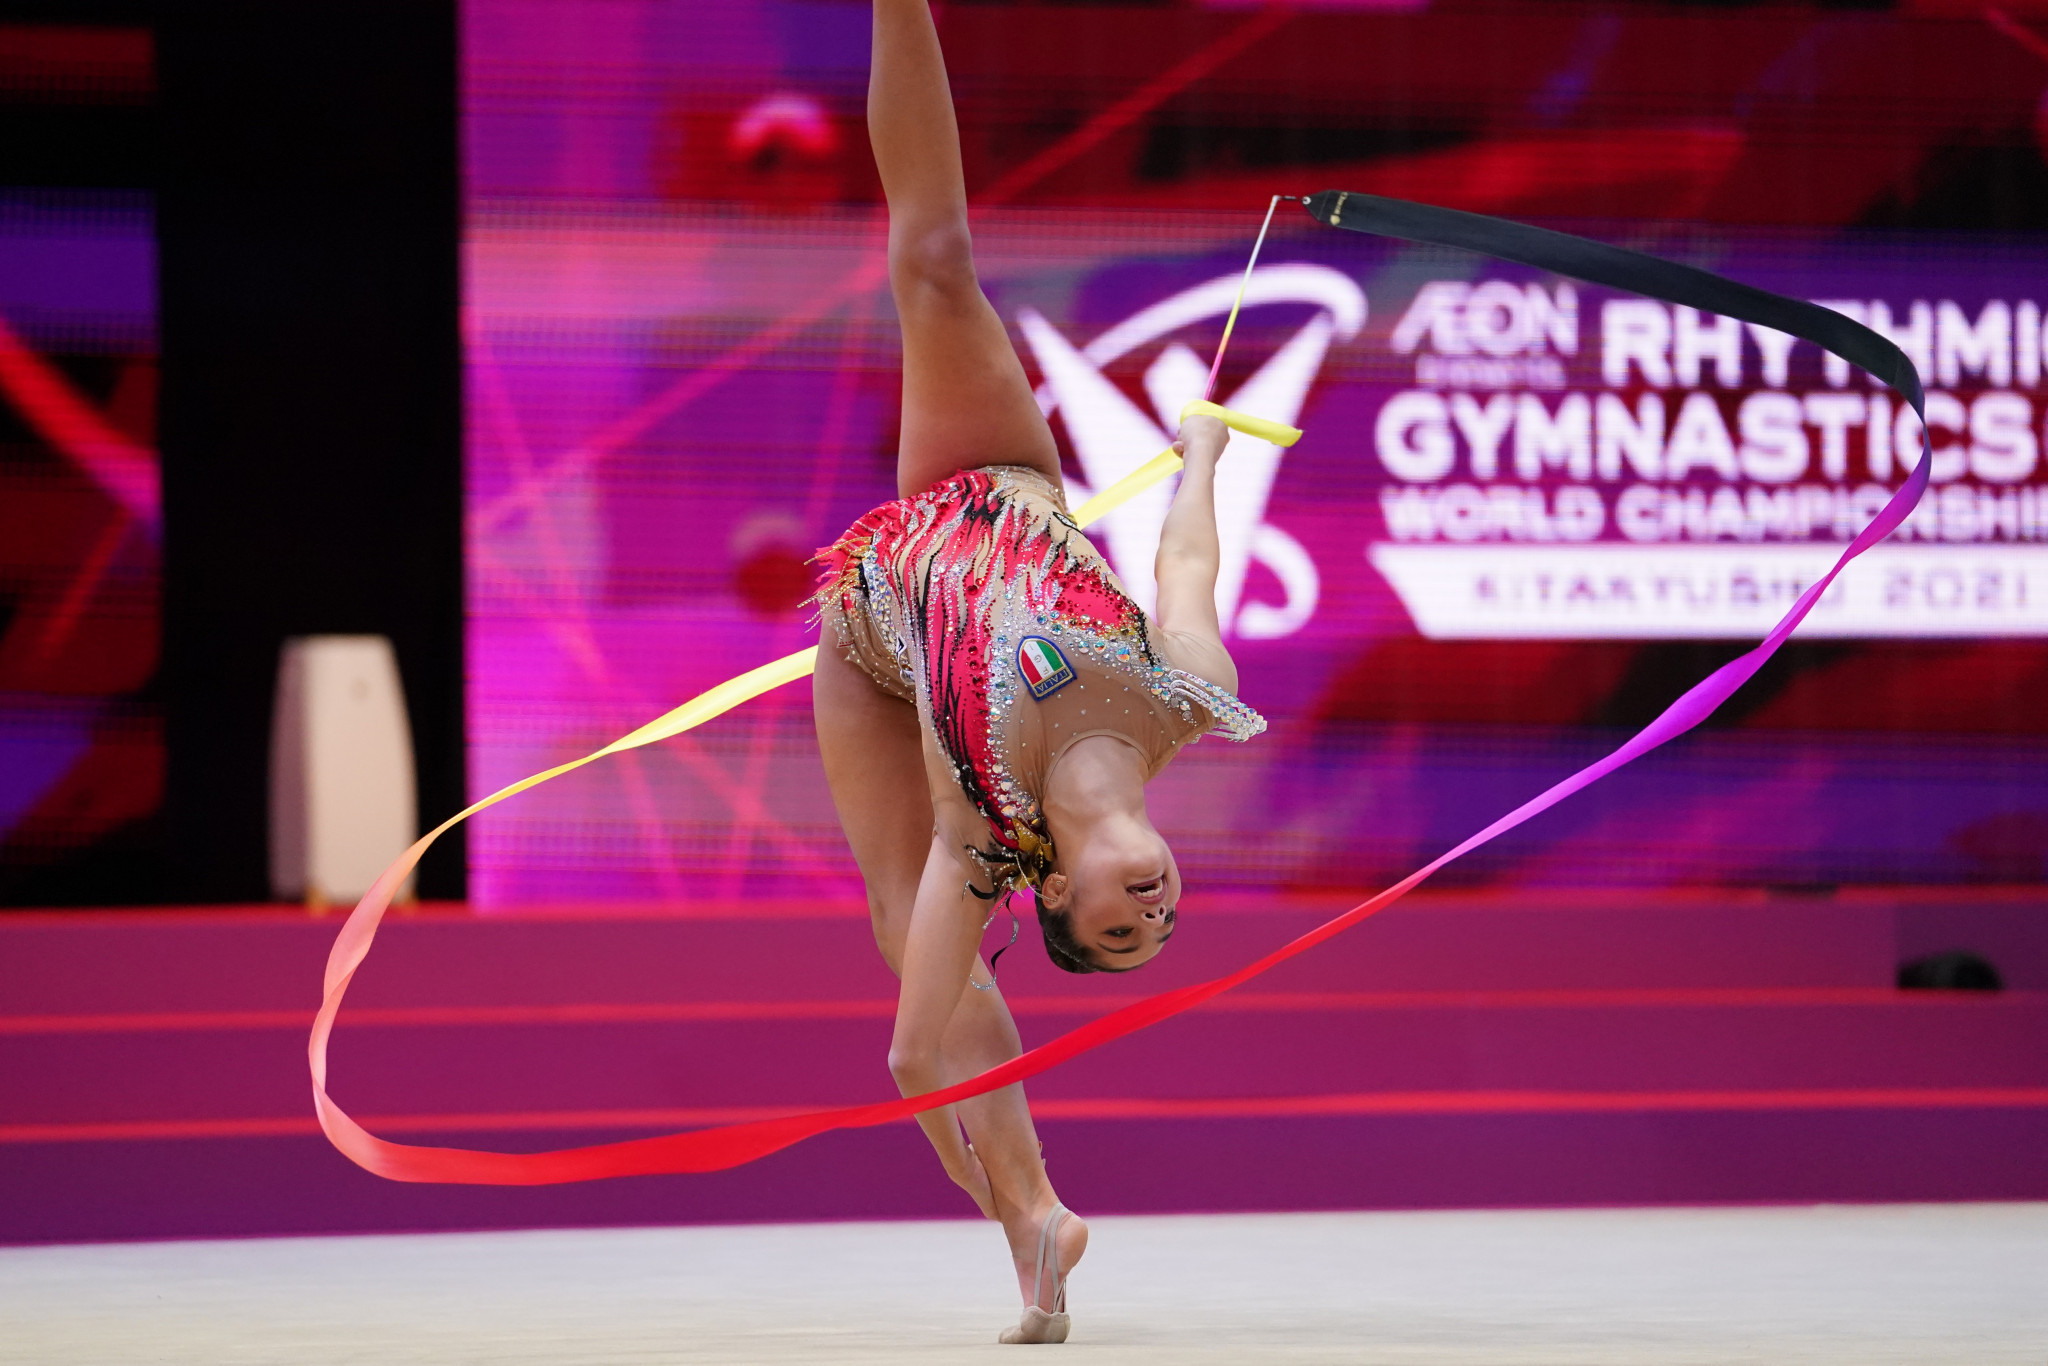 rhythmic gymnastic in open legs  